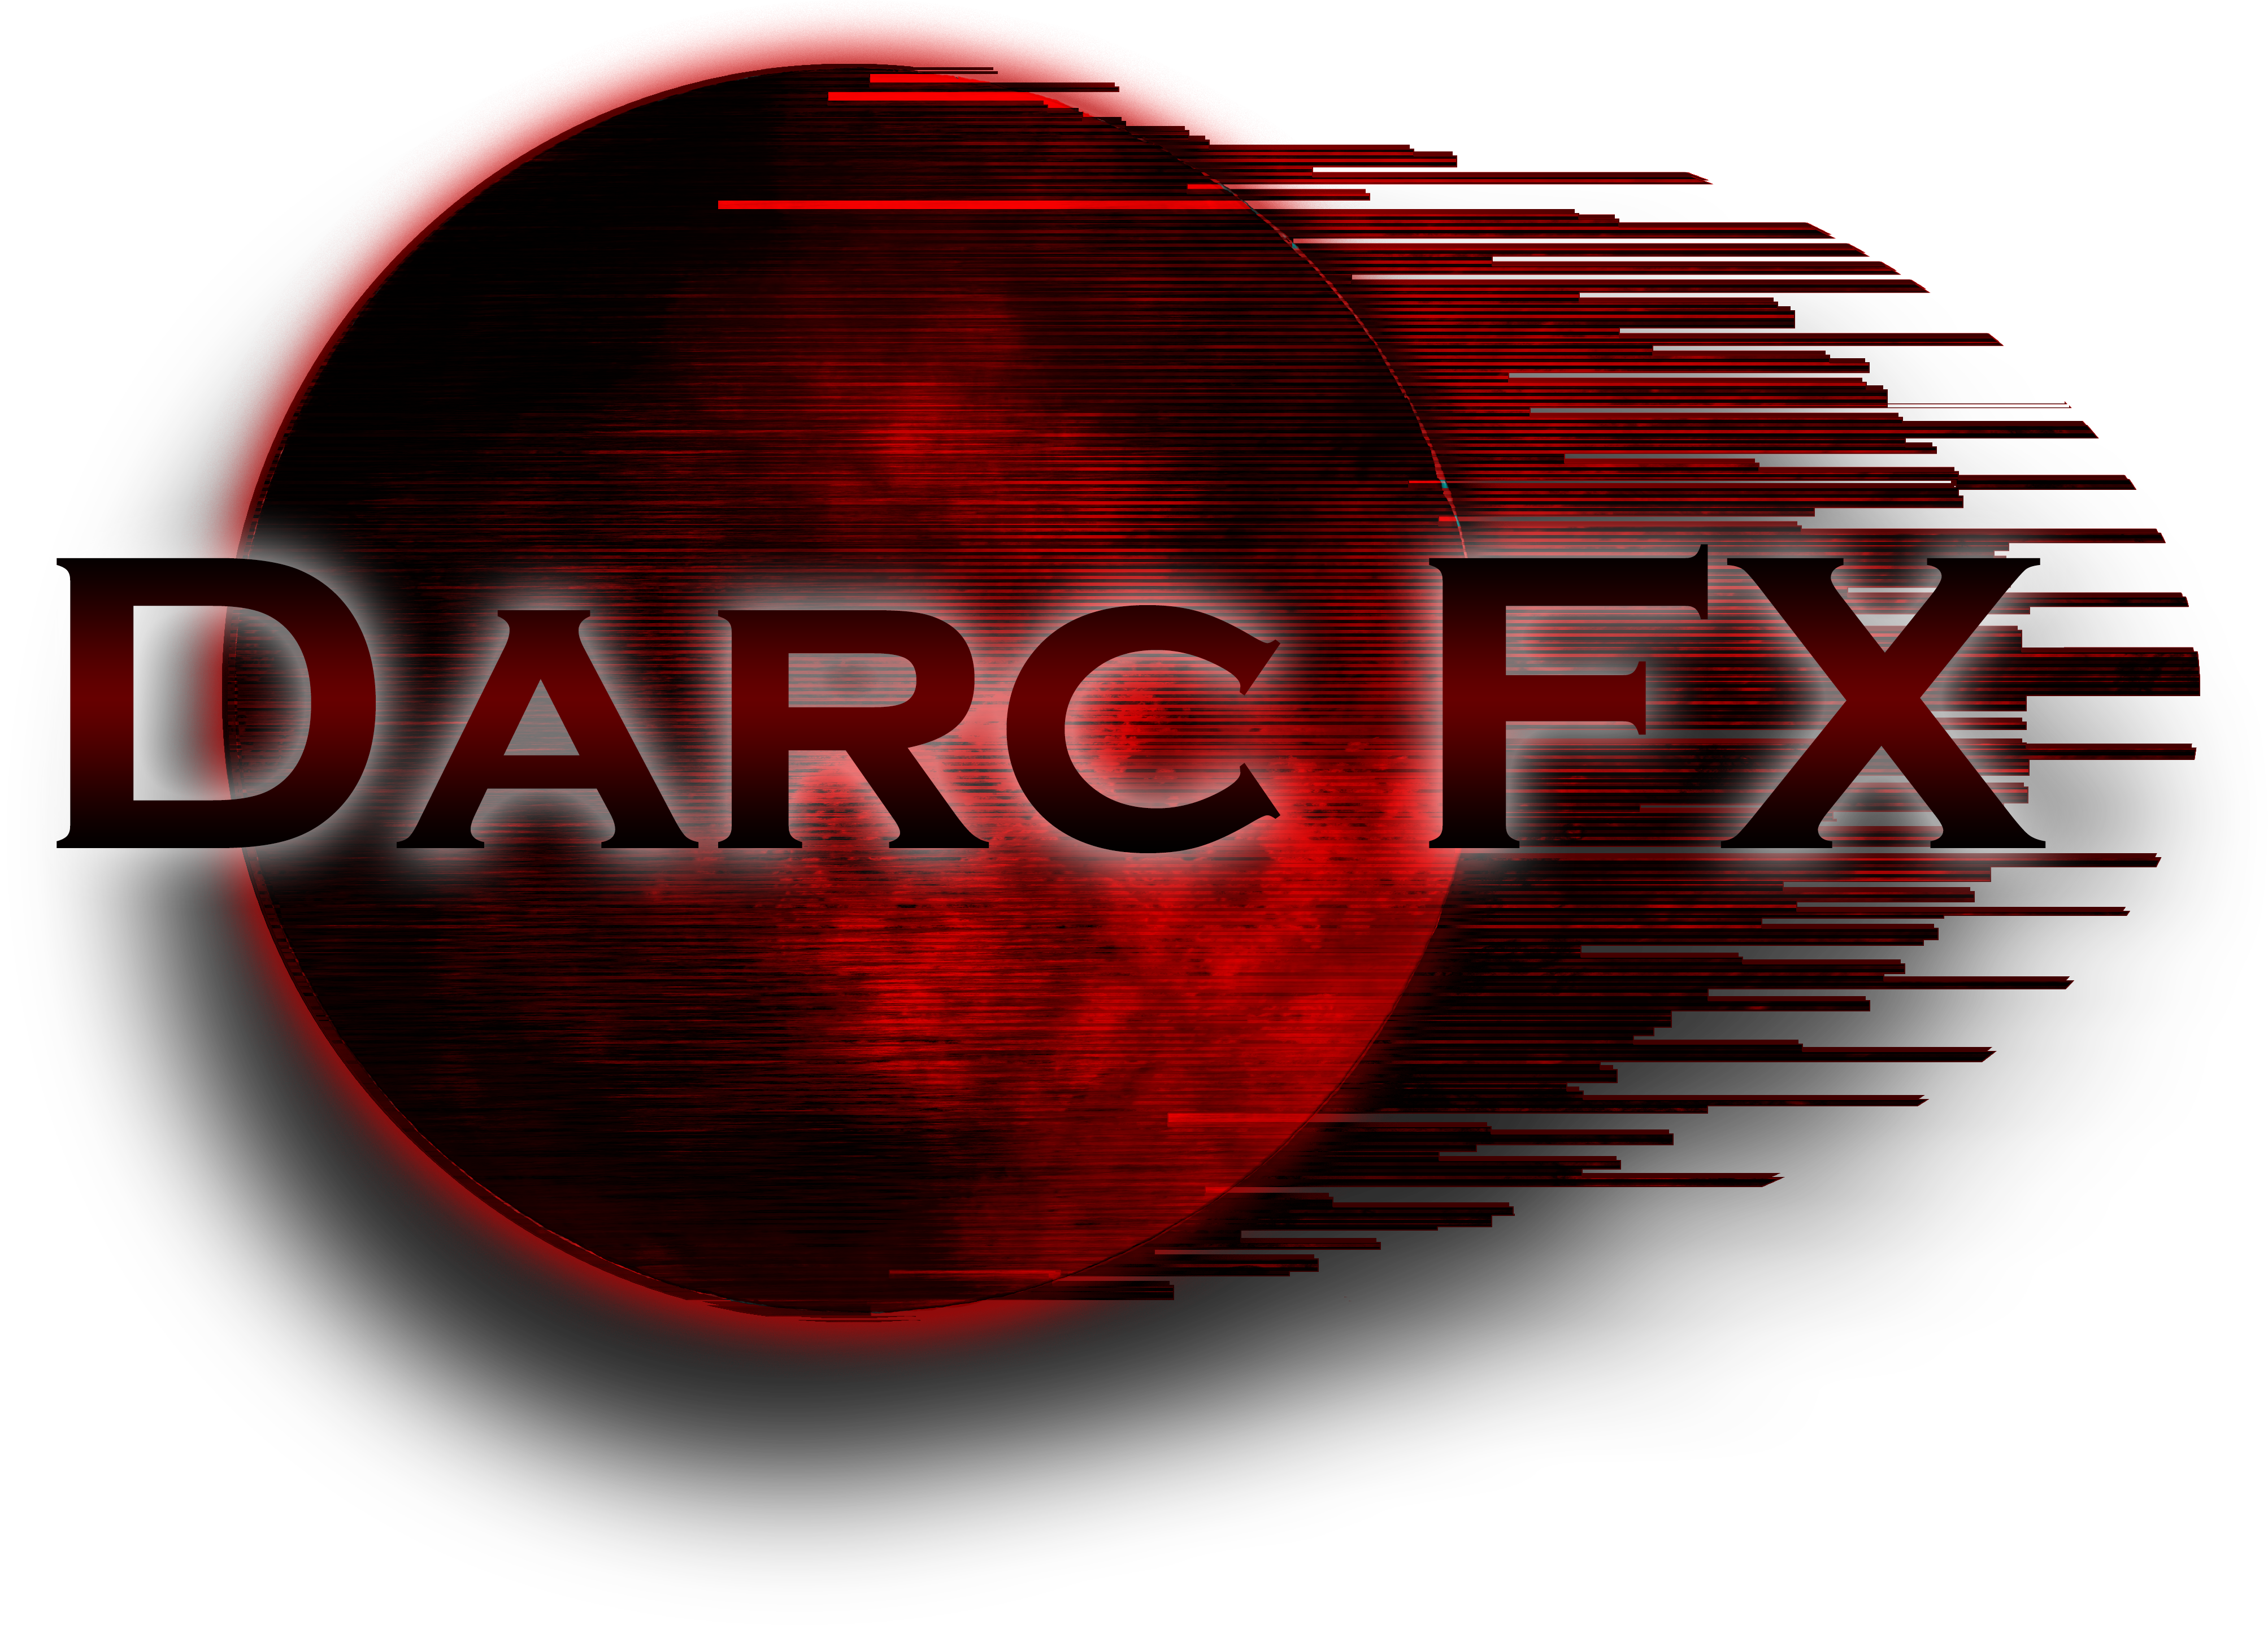 DarcFX